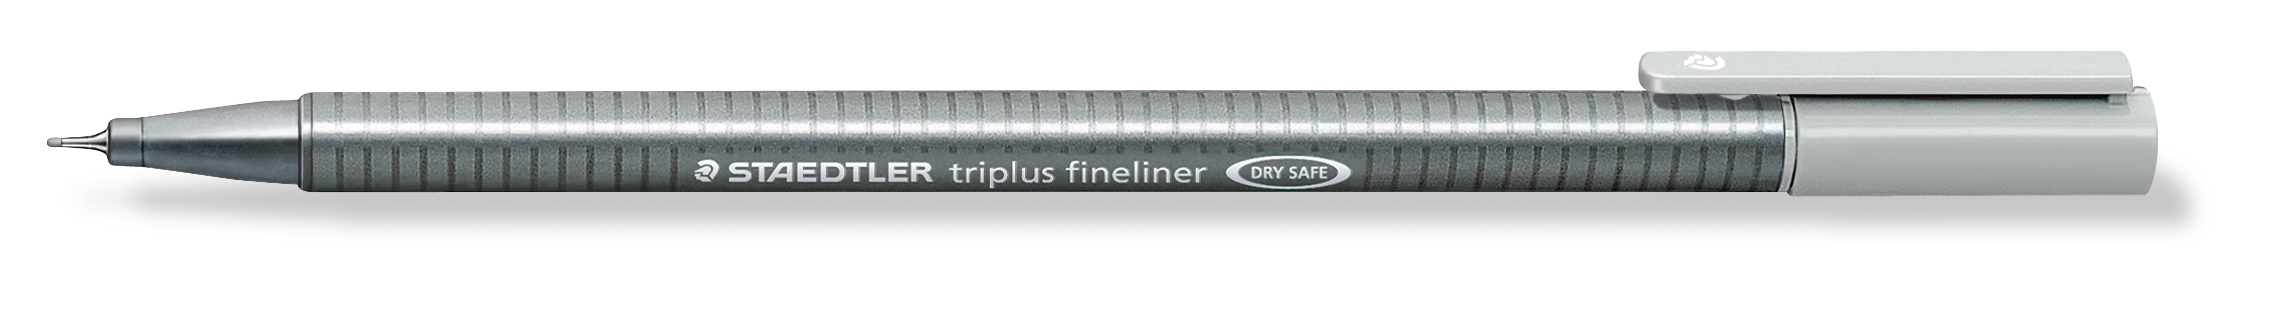 STAEDTLER Triplus Fineliner 0,3mm 334-82 silbergrau